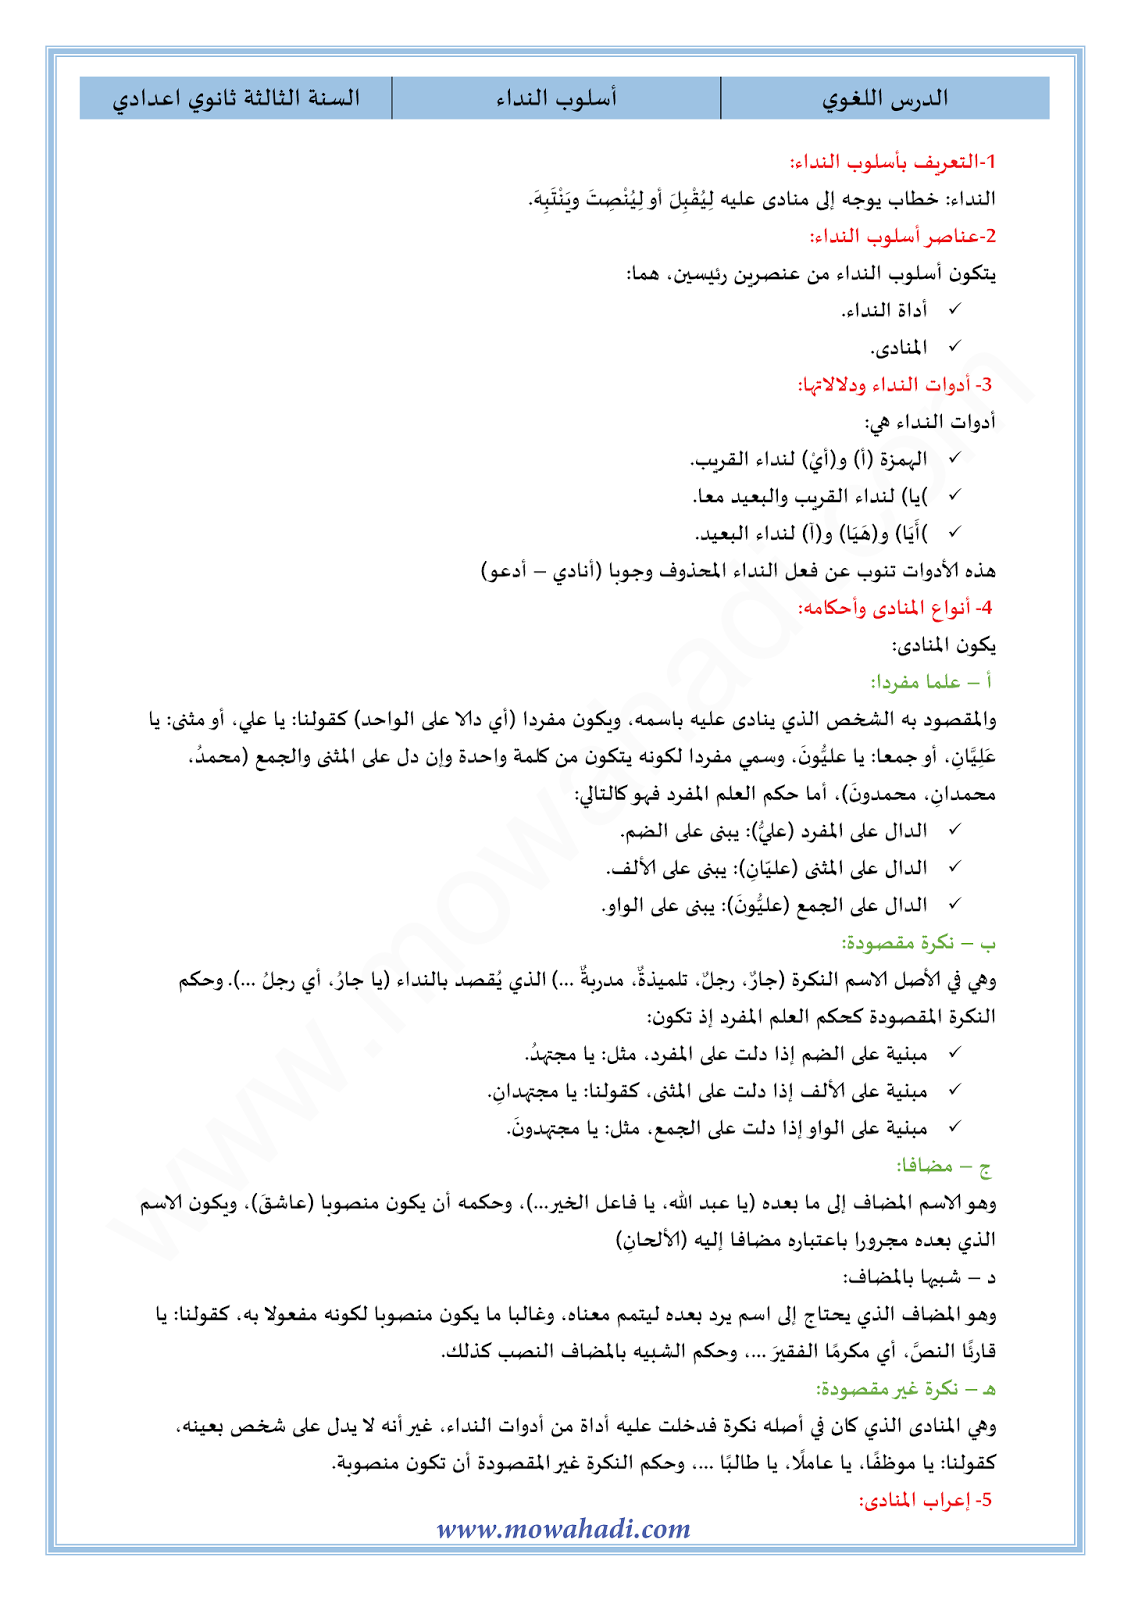 الدرس اللغوي أسلوب النداء للسنة الثالثة اعدادي في مادة اللغة العربية 11-cours-dars-loghawi3_001